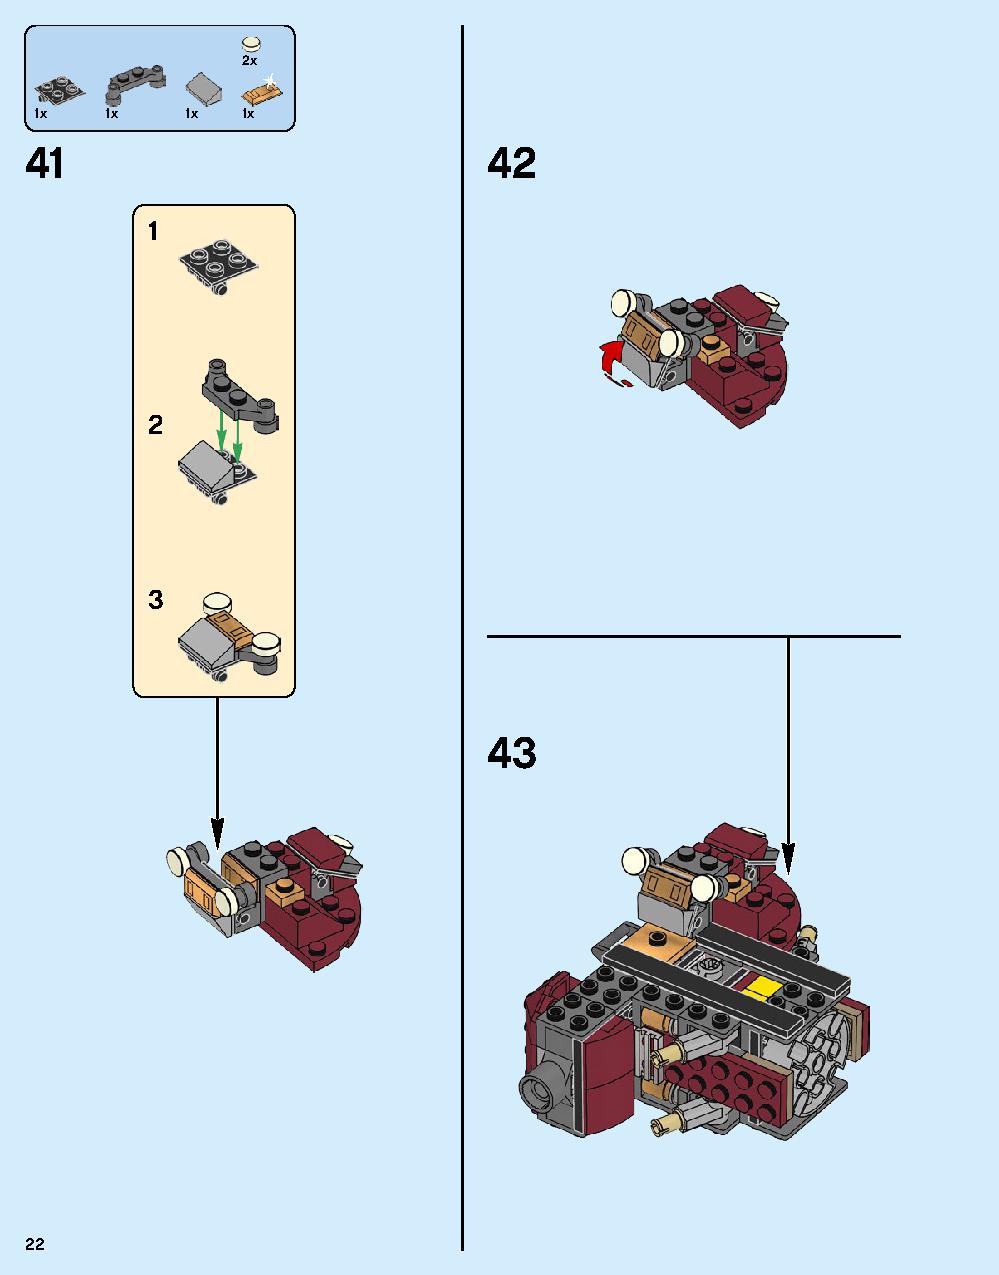 어벤져스 헐크버스터: 울트론 에디션 76105 레고 세트 제품정보 레고 조립설명서 22 page